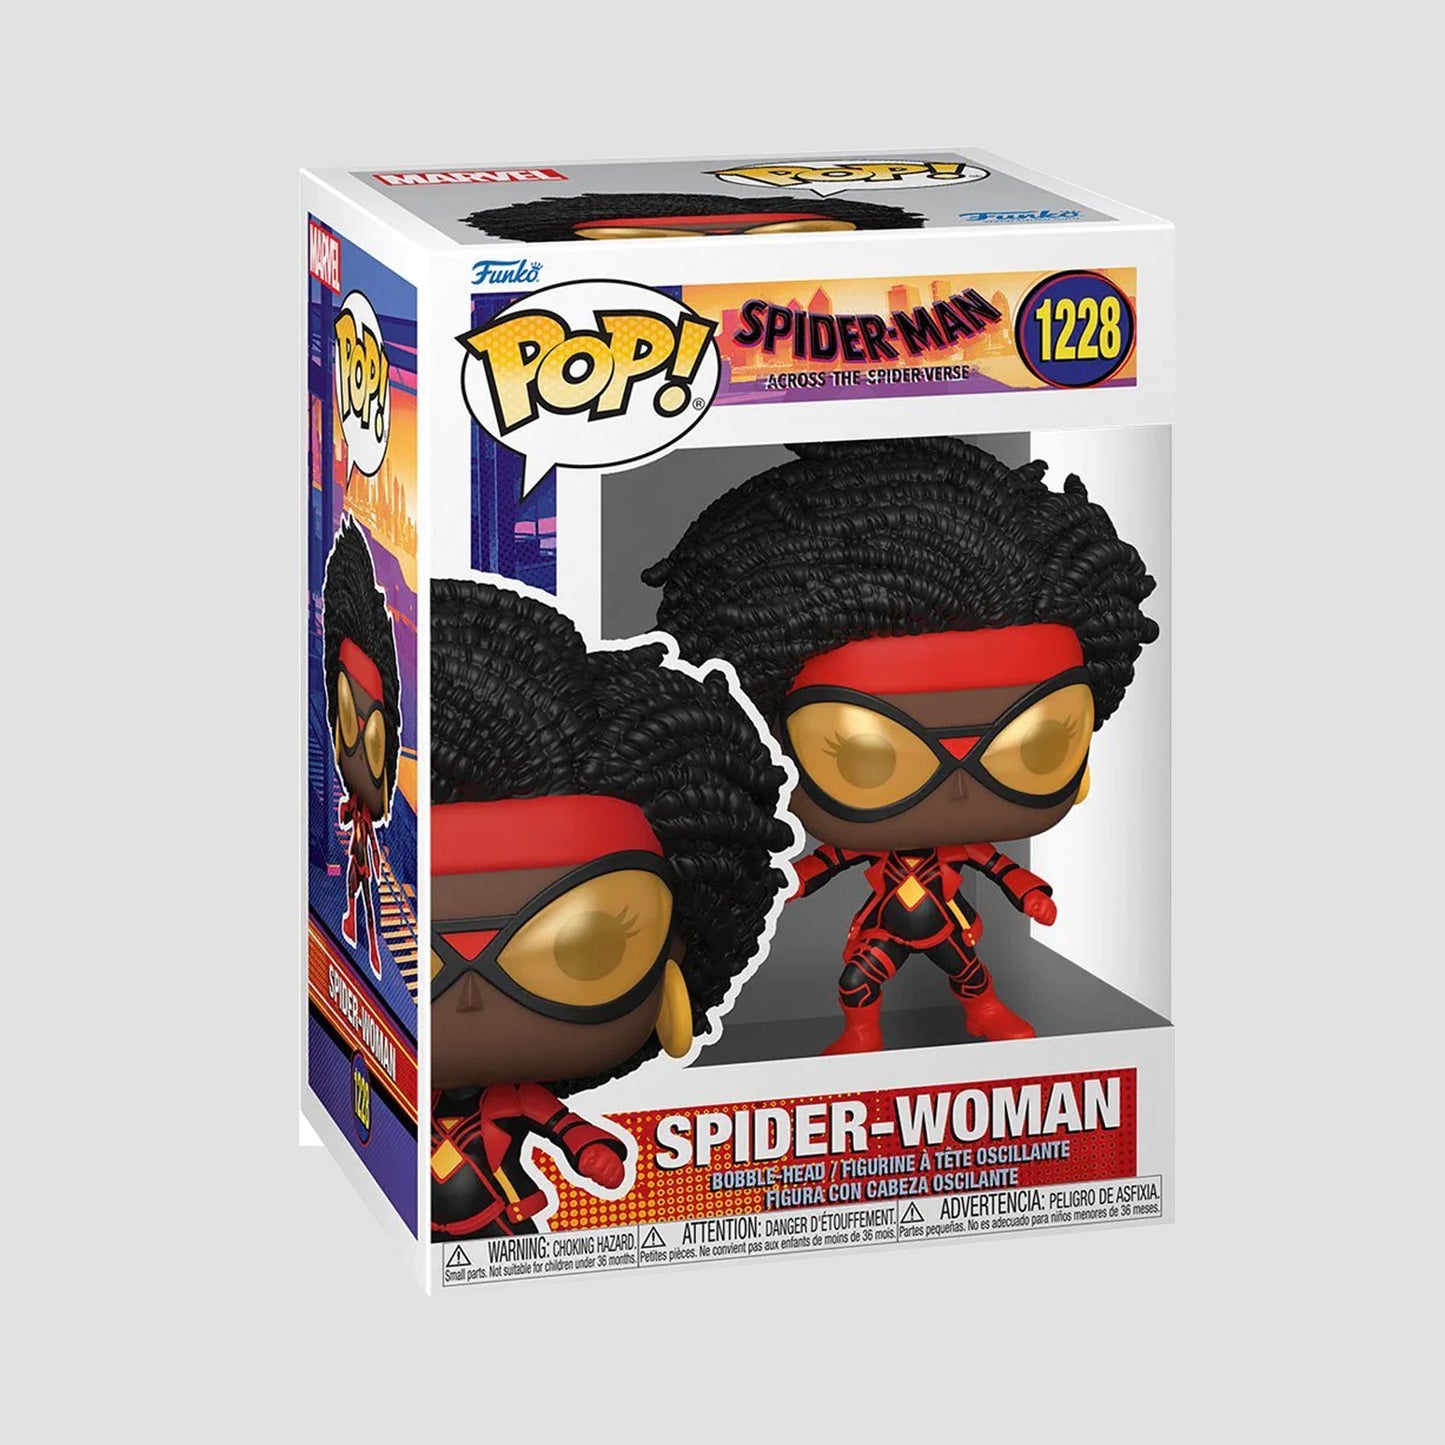 Spider-Woman (Spider-Man: Across the Spider-verse) Marvel Funko Pop!